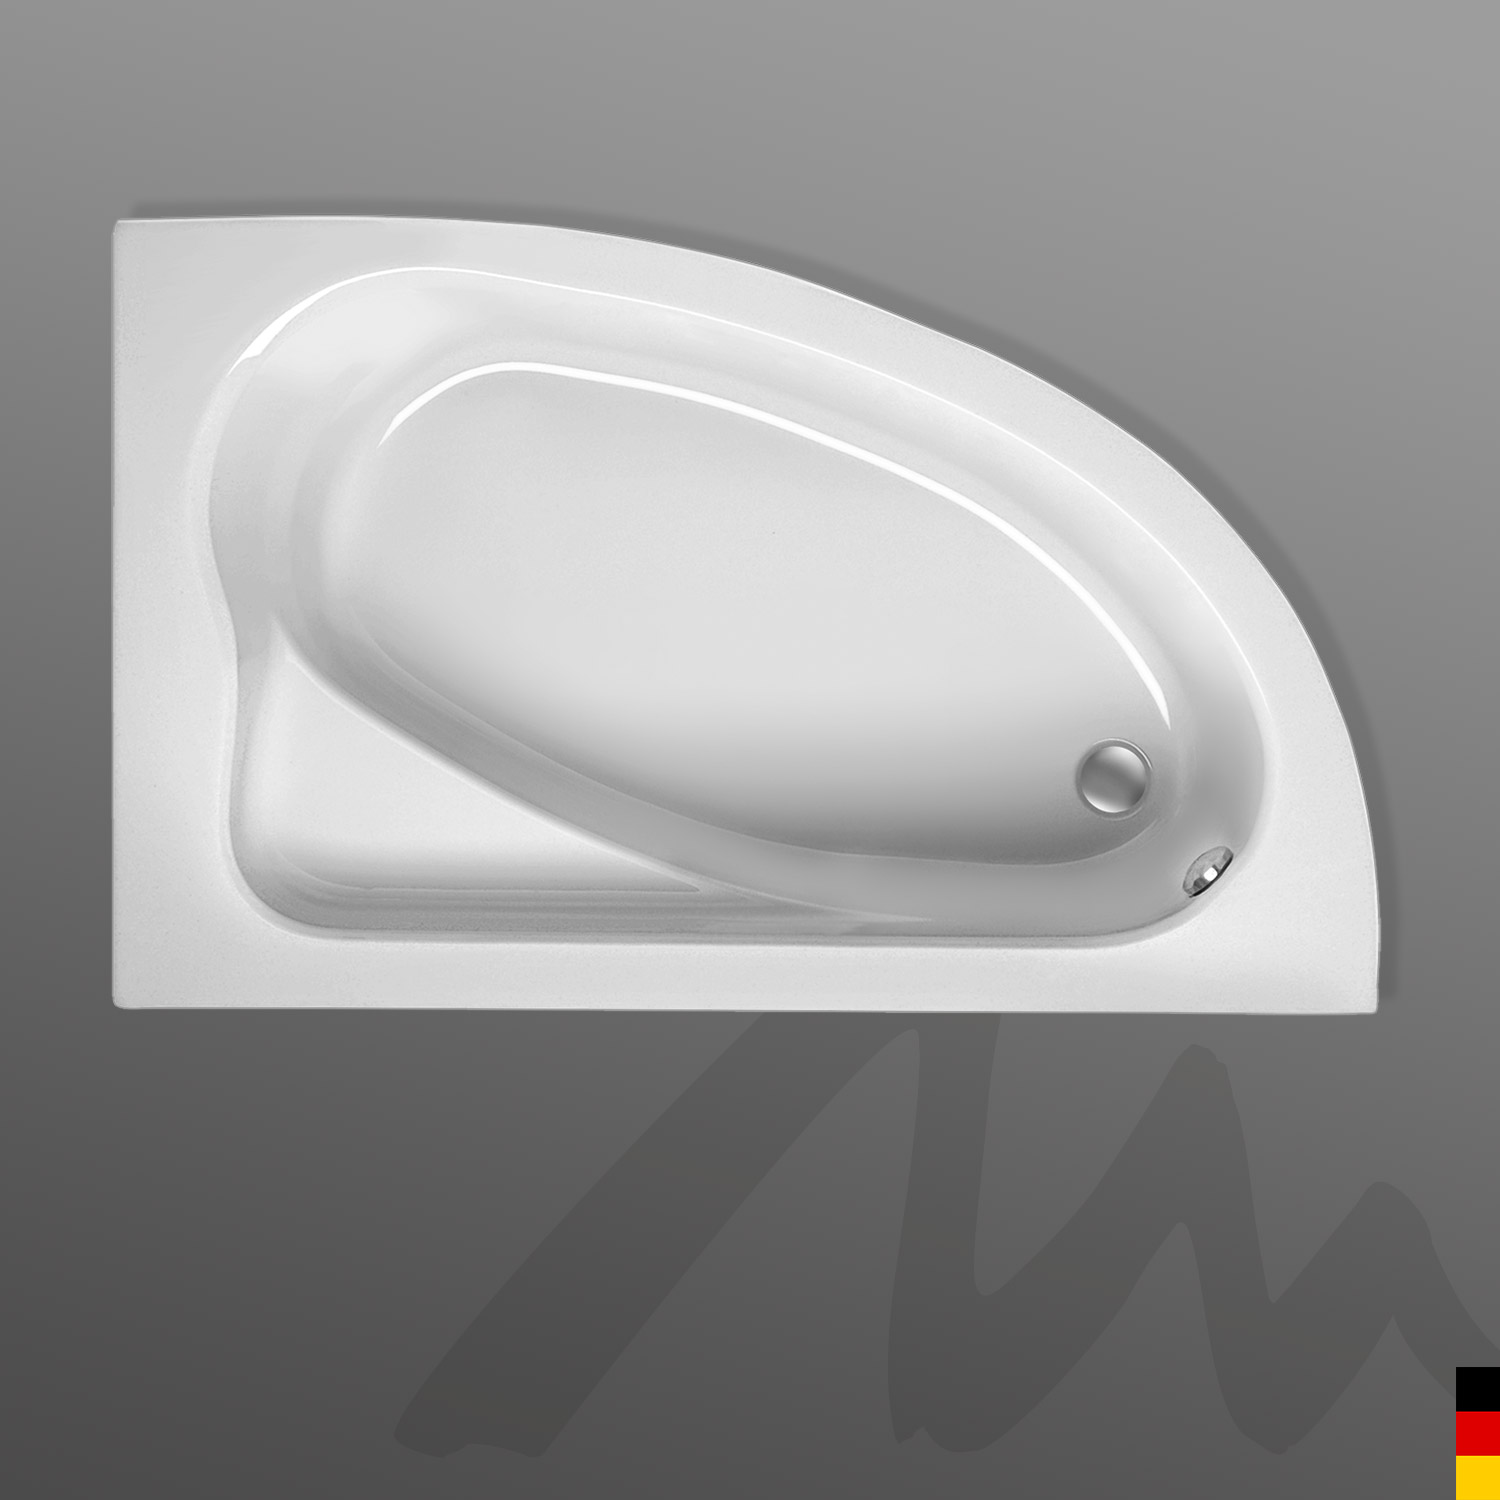 Mauersberger Badewanne Eckwanne Aspera Ausführung links 150x100x44  Farbe:weiß Weiß Links kein Soundsystem Sterne-Effektlicht mit 16 Linsenstrahlen